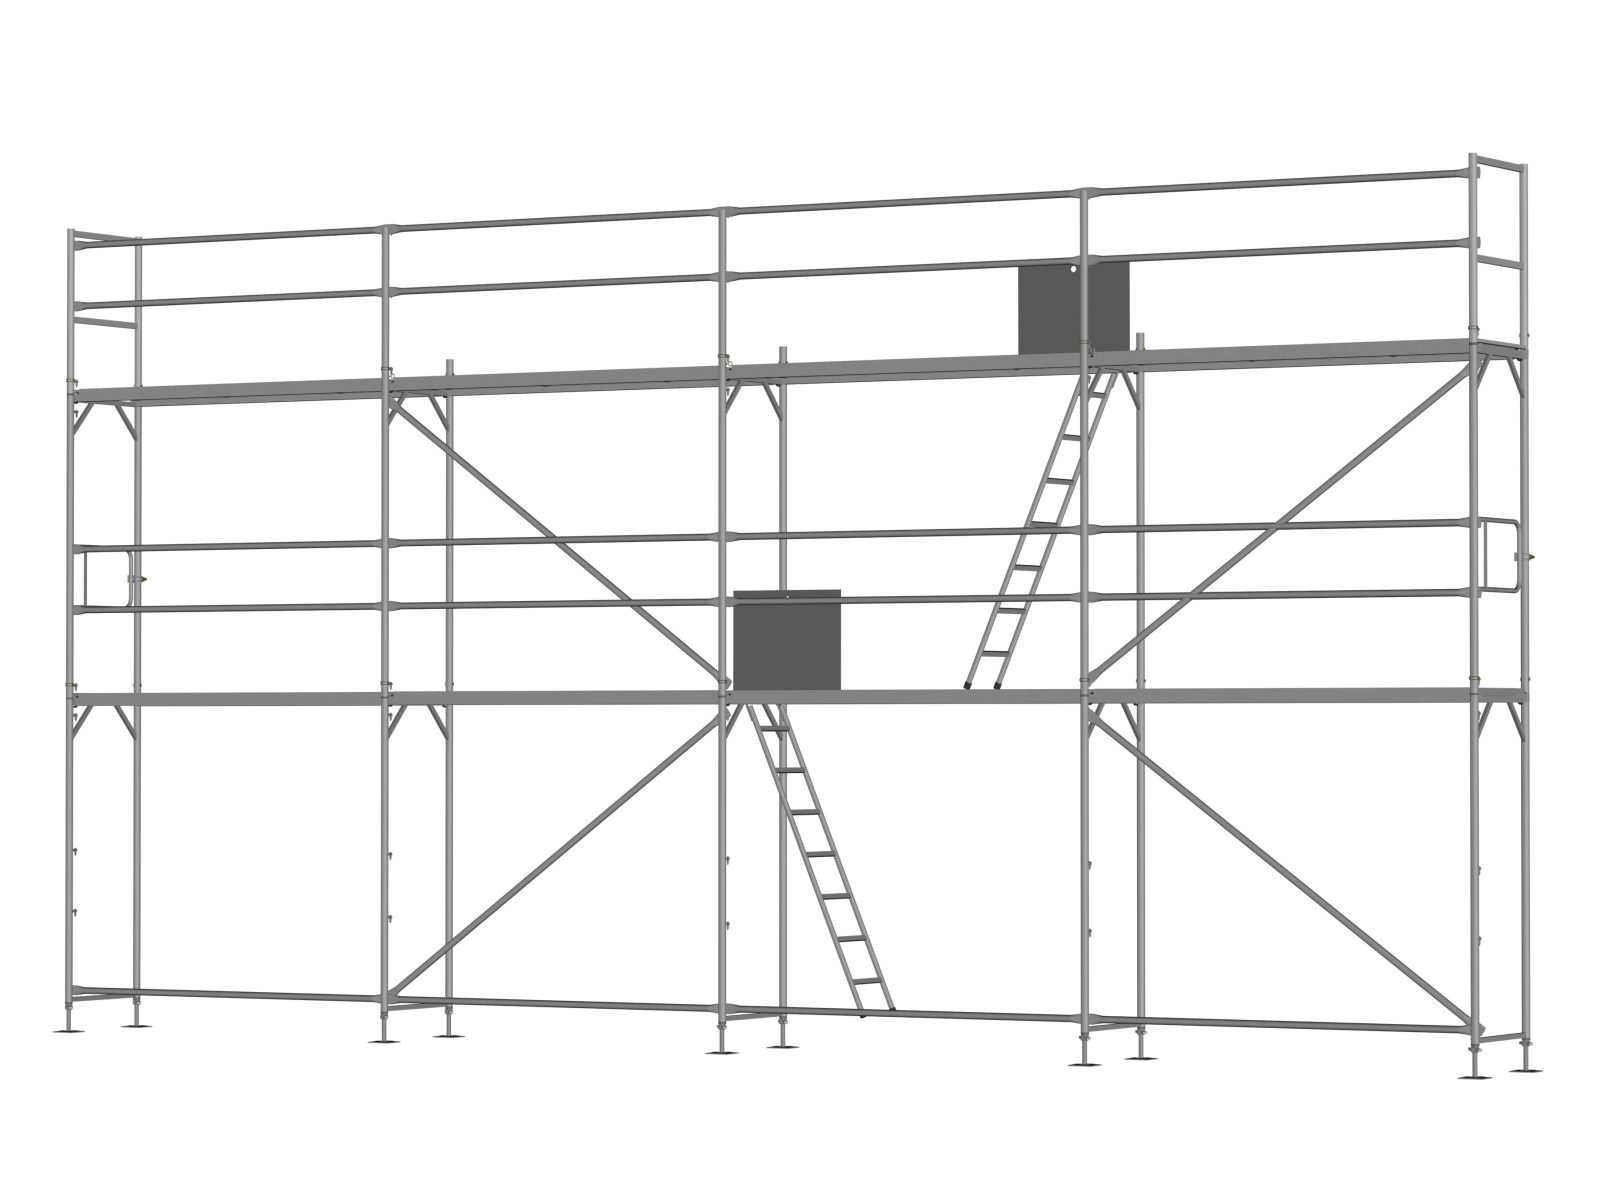 Alu Traufseitengerüst 60 qm - 2,5 m Felder - 10 m lang - 6 m Arbeitshöhe - Basis-Gerüst inkl. Aufstieg & Befestigung